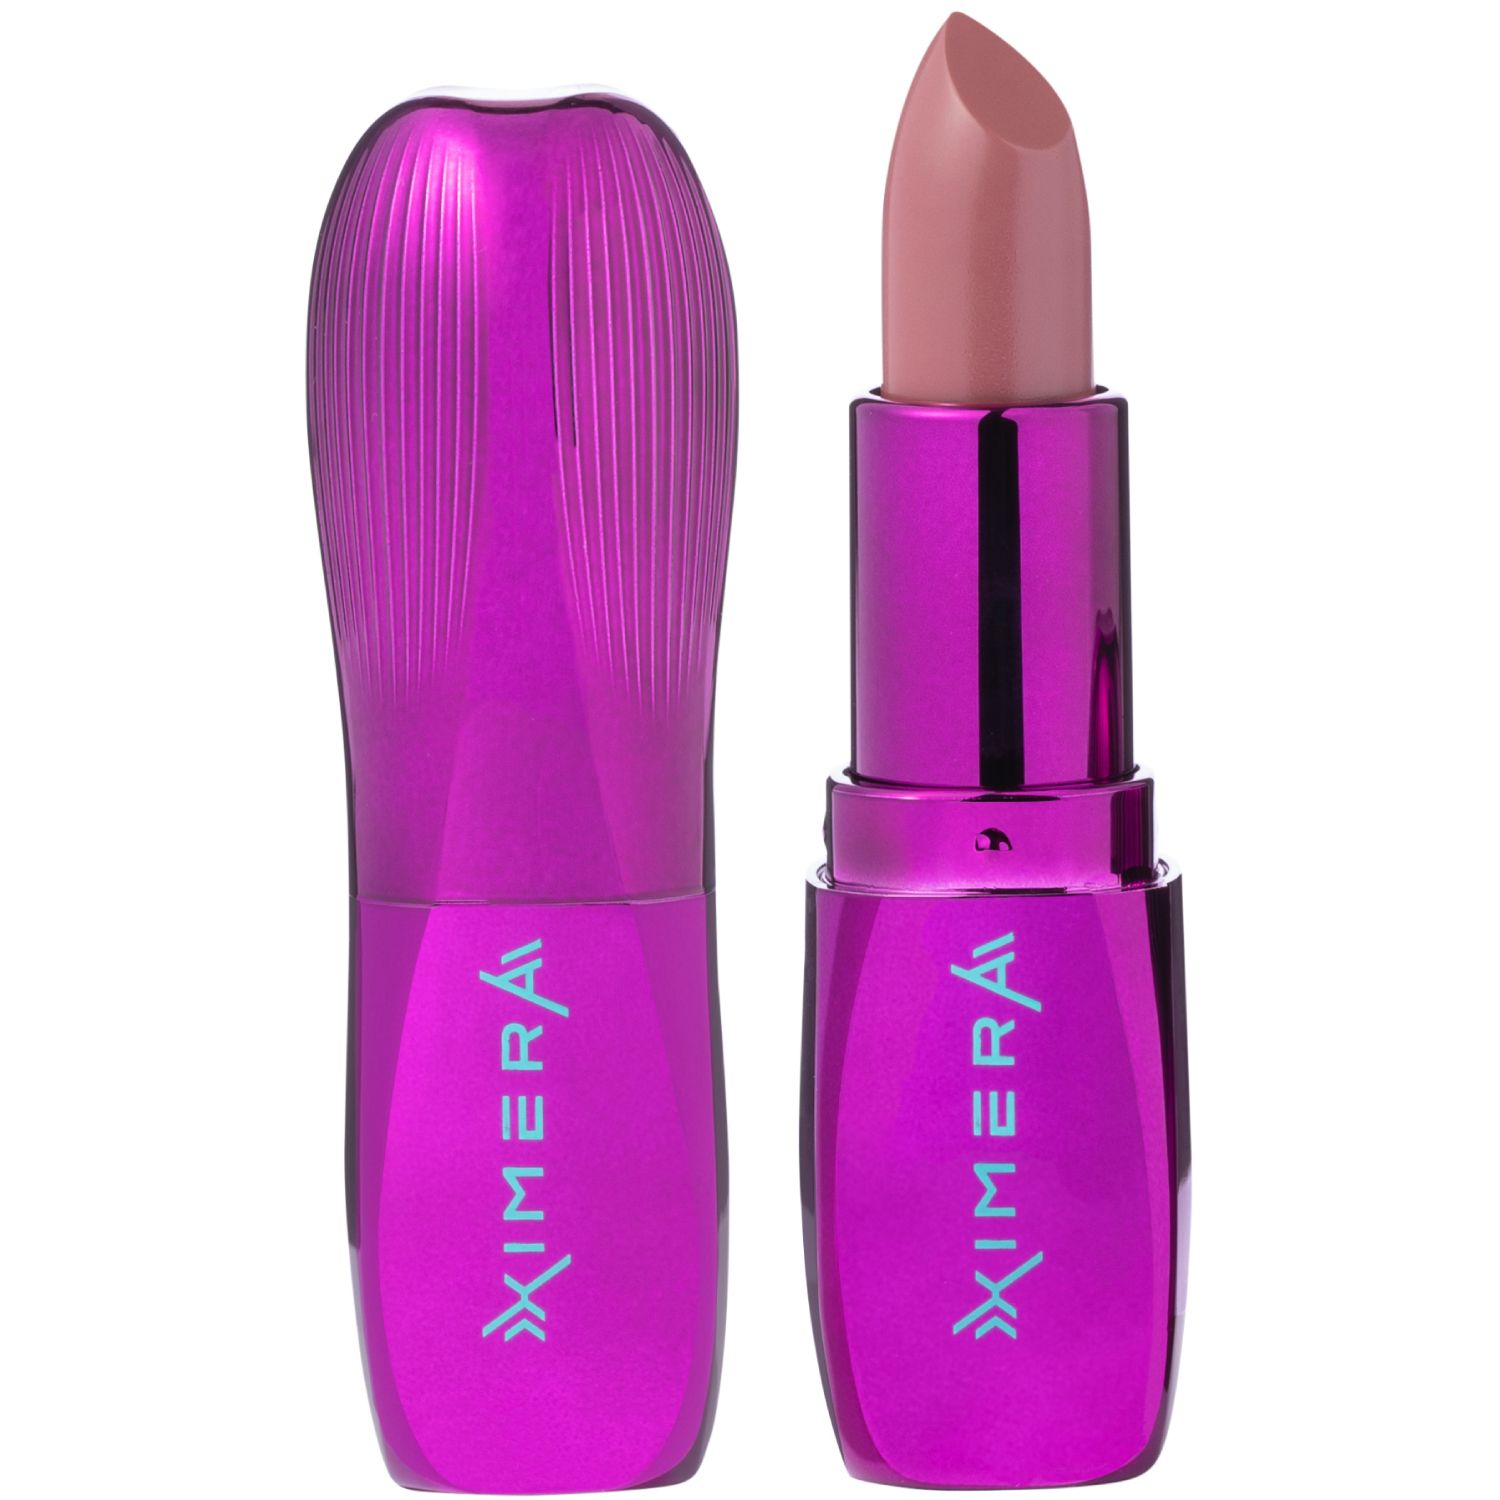 Помада Influence Beauty XIMERA для губ, тон 02: коричнево-розовый полупрозрачный нюд, 4 г помада бальзам для губ beauty bomb тон 04 3 5 г